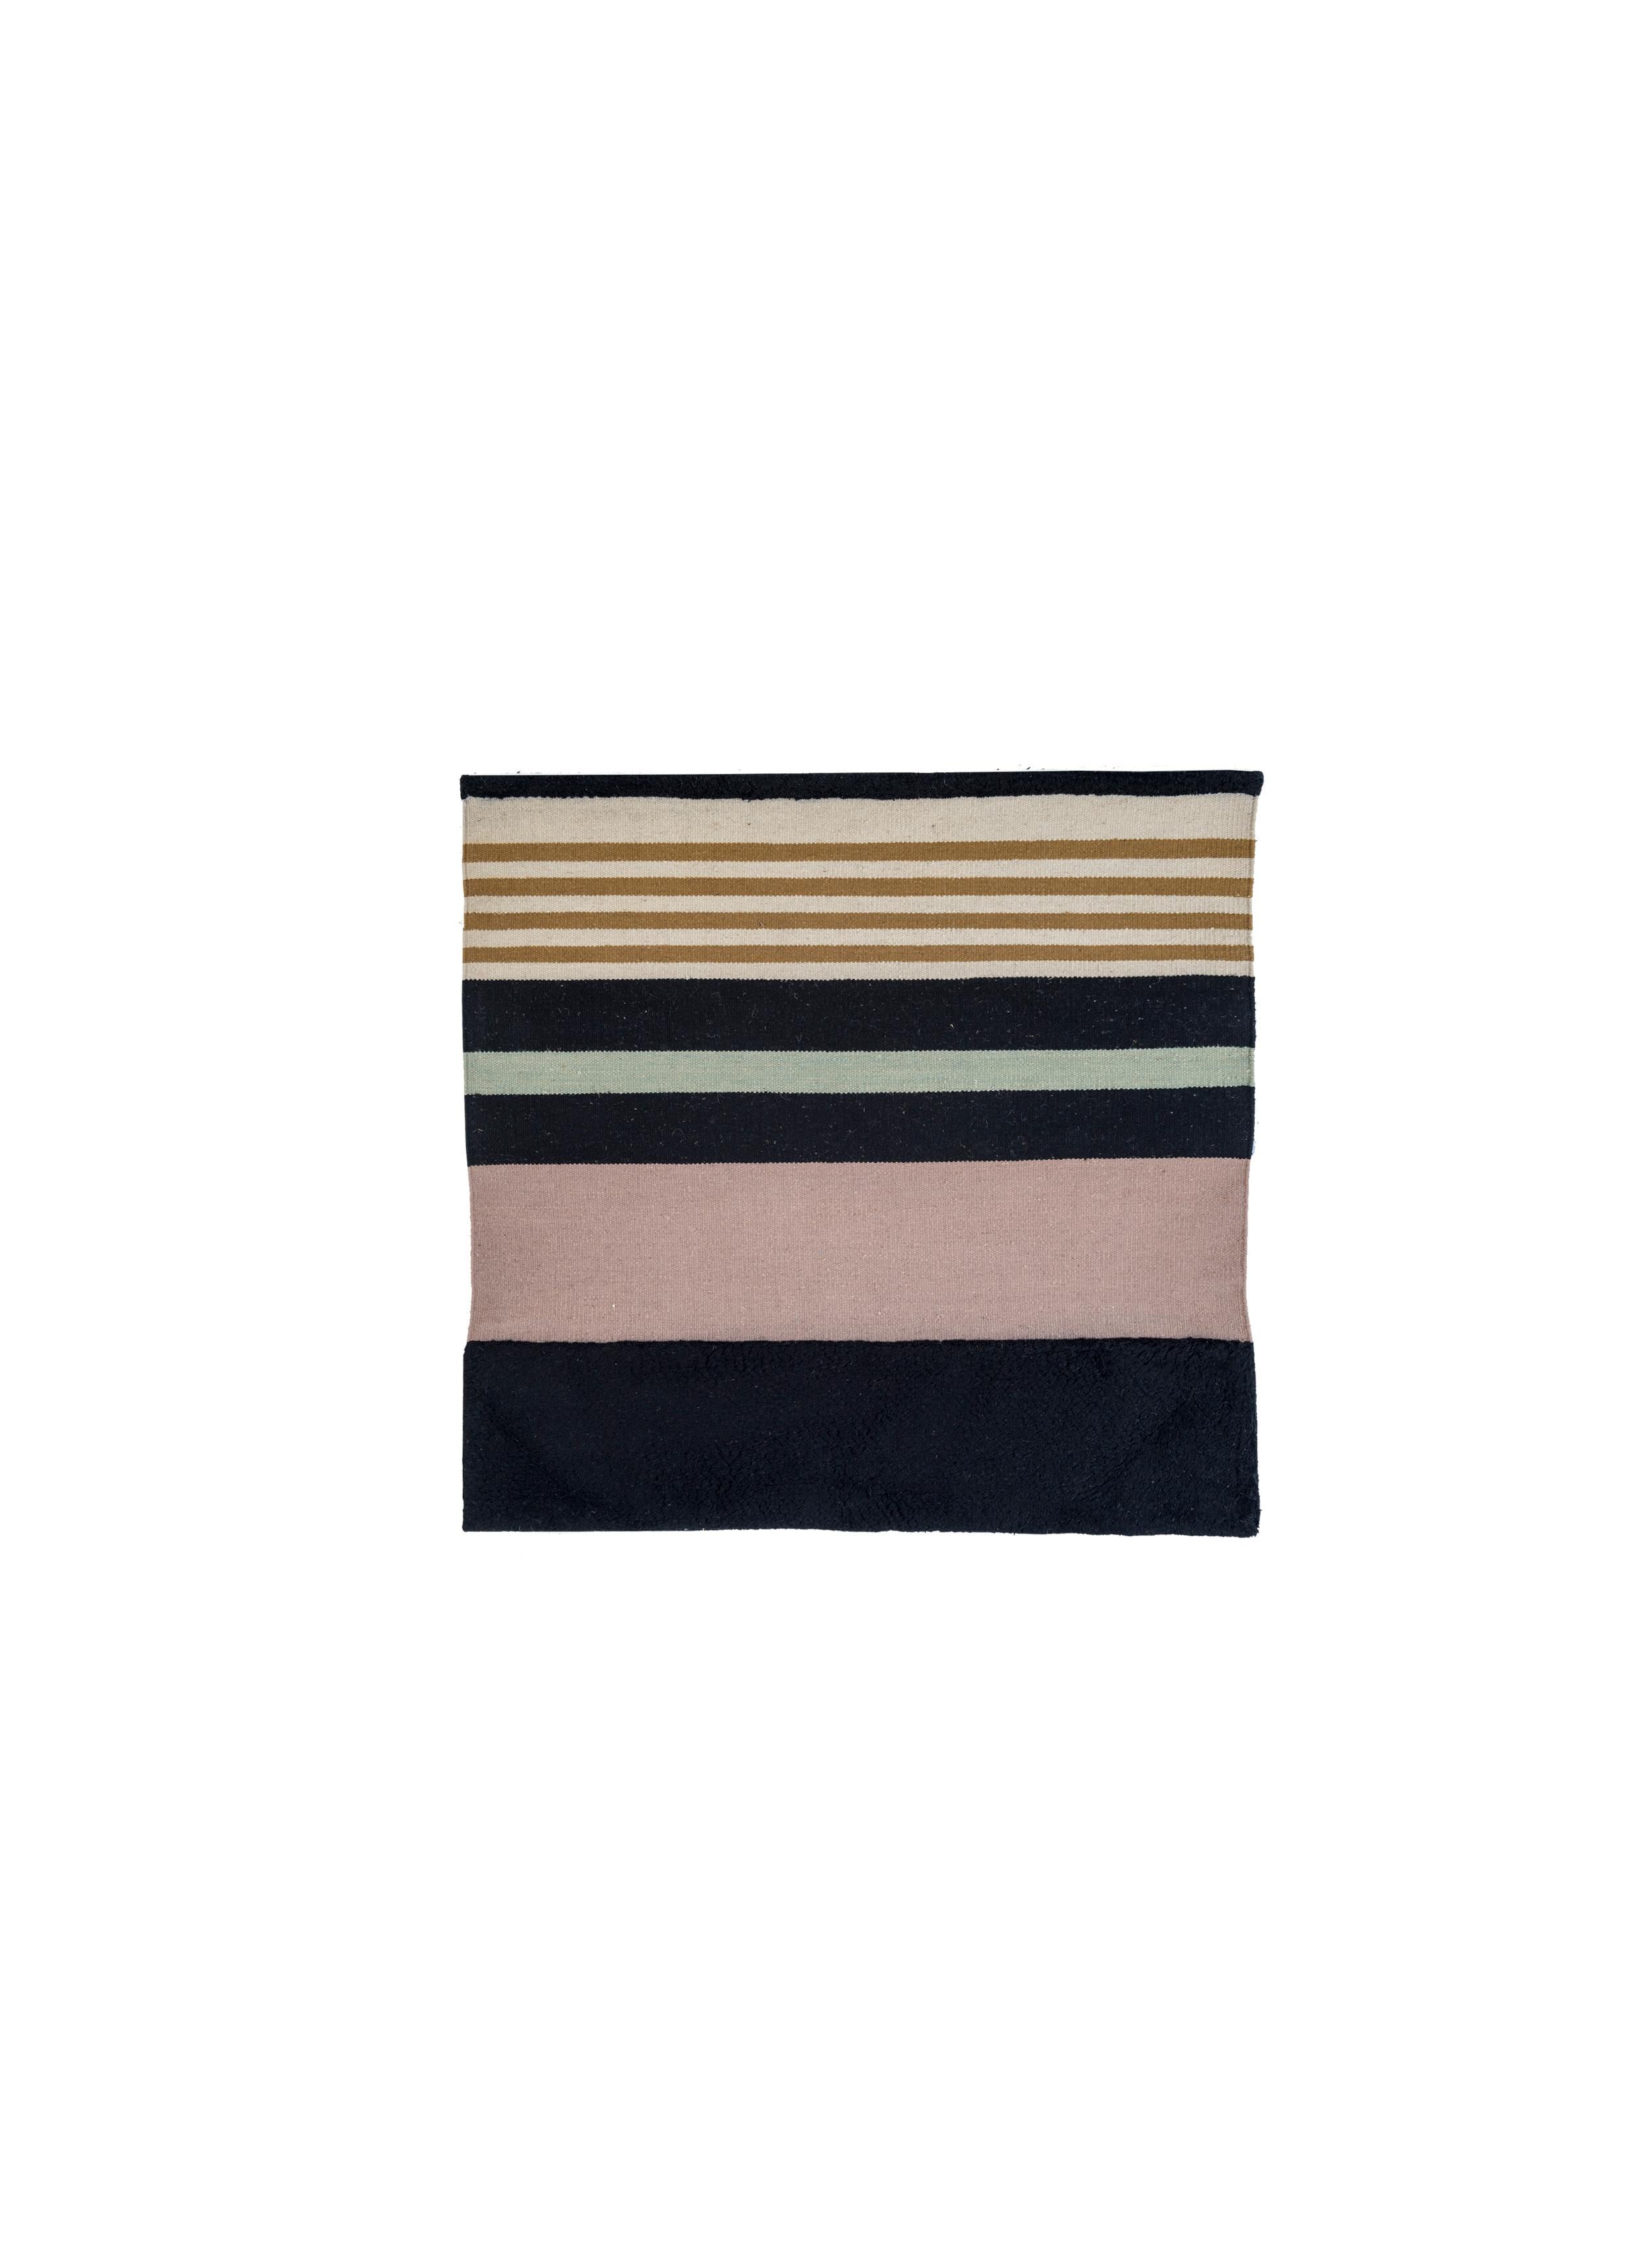 Nr. 279 freeplay handgeknüpfter Teppich von Lyk Carpet
Abmessungen: B 120 x L 120 cm.
MATERIALIEN: 100% tibetische Hochlandwolle, handgekämmte und handgesponnene Schurwolle, natürliche pflanzengefärbte Wolle, 100 Knoten pro